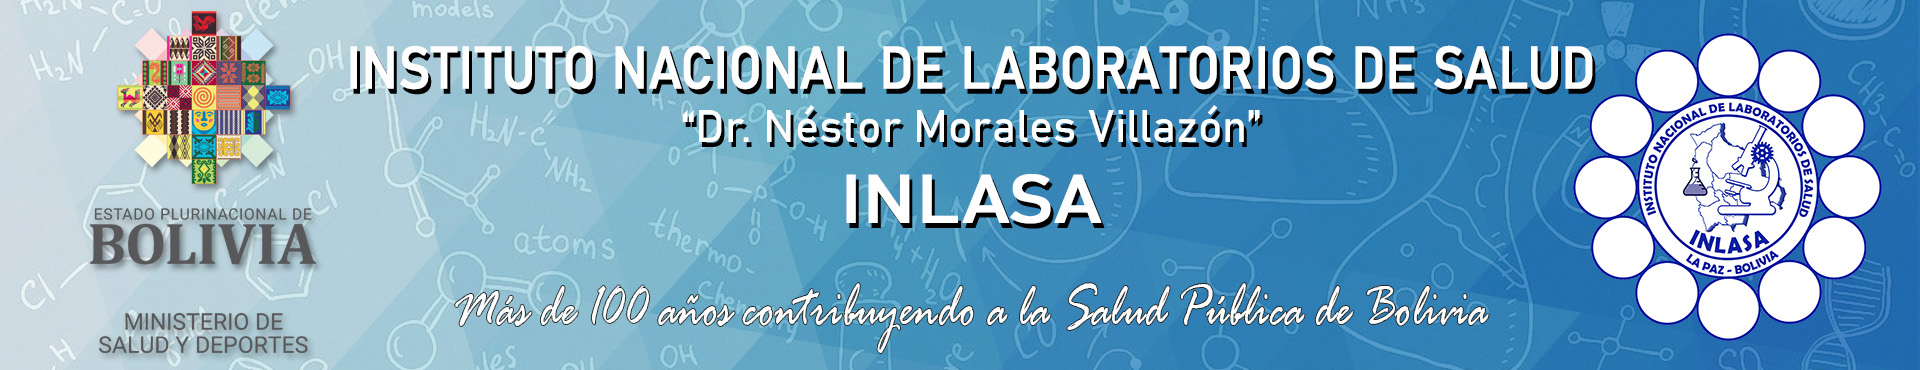 INLASA | Instituto Nacional de Laboratorios de Salud